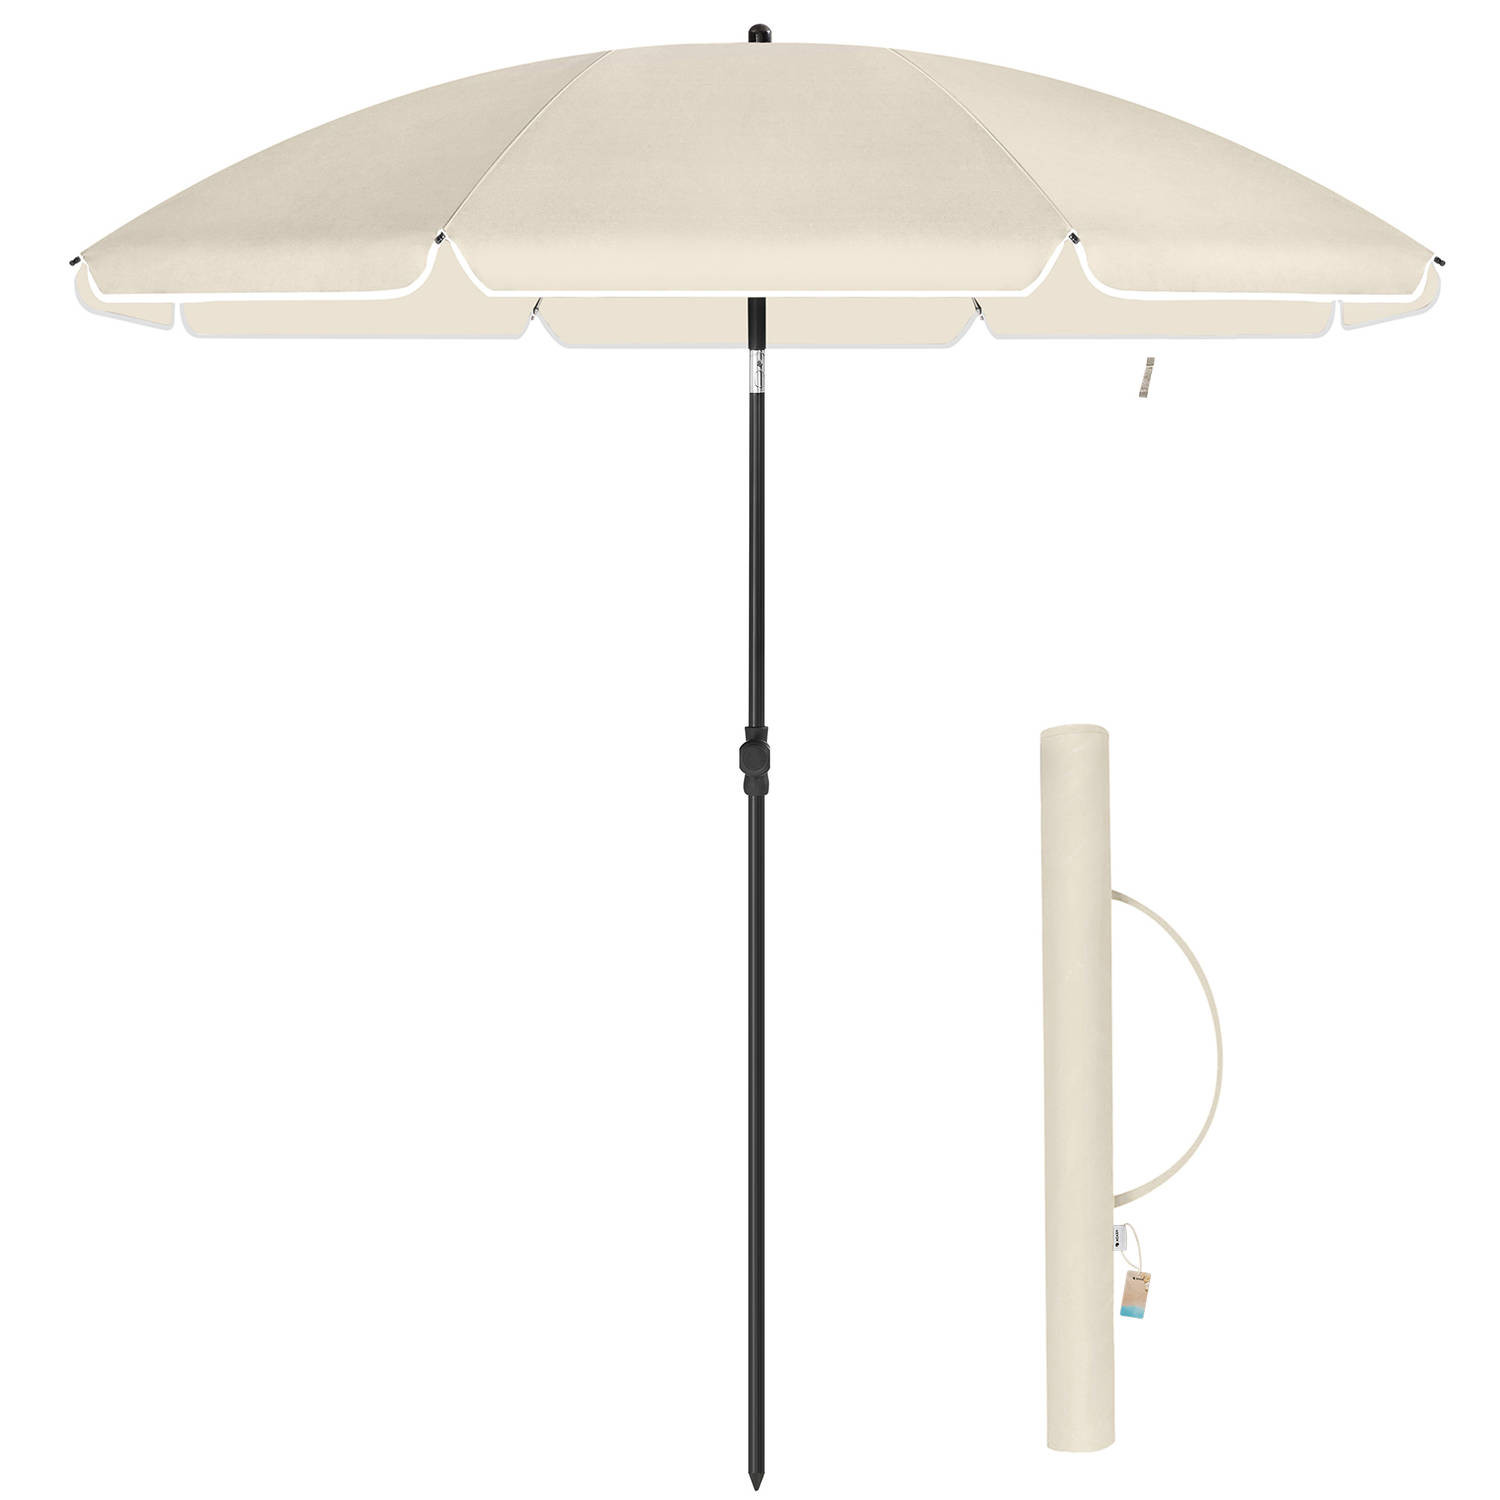 ACAZA Parasol 180 cm diameter, rond / achthoekige strandparasol, knikbaar, kantelbaar, met draagtas - beige